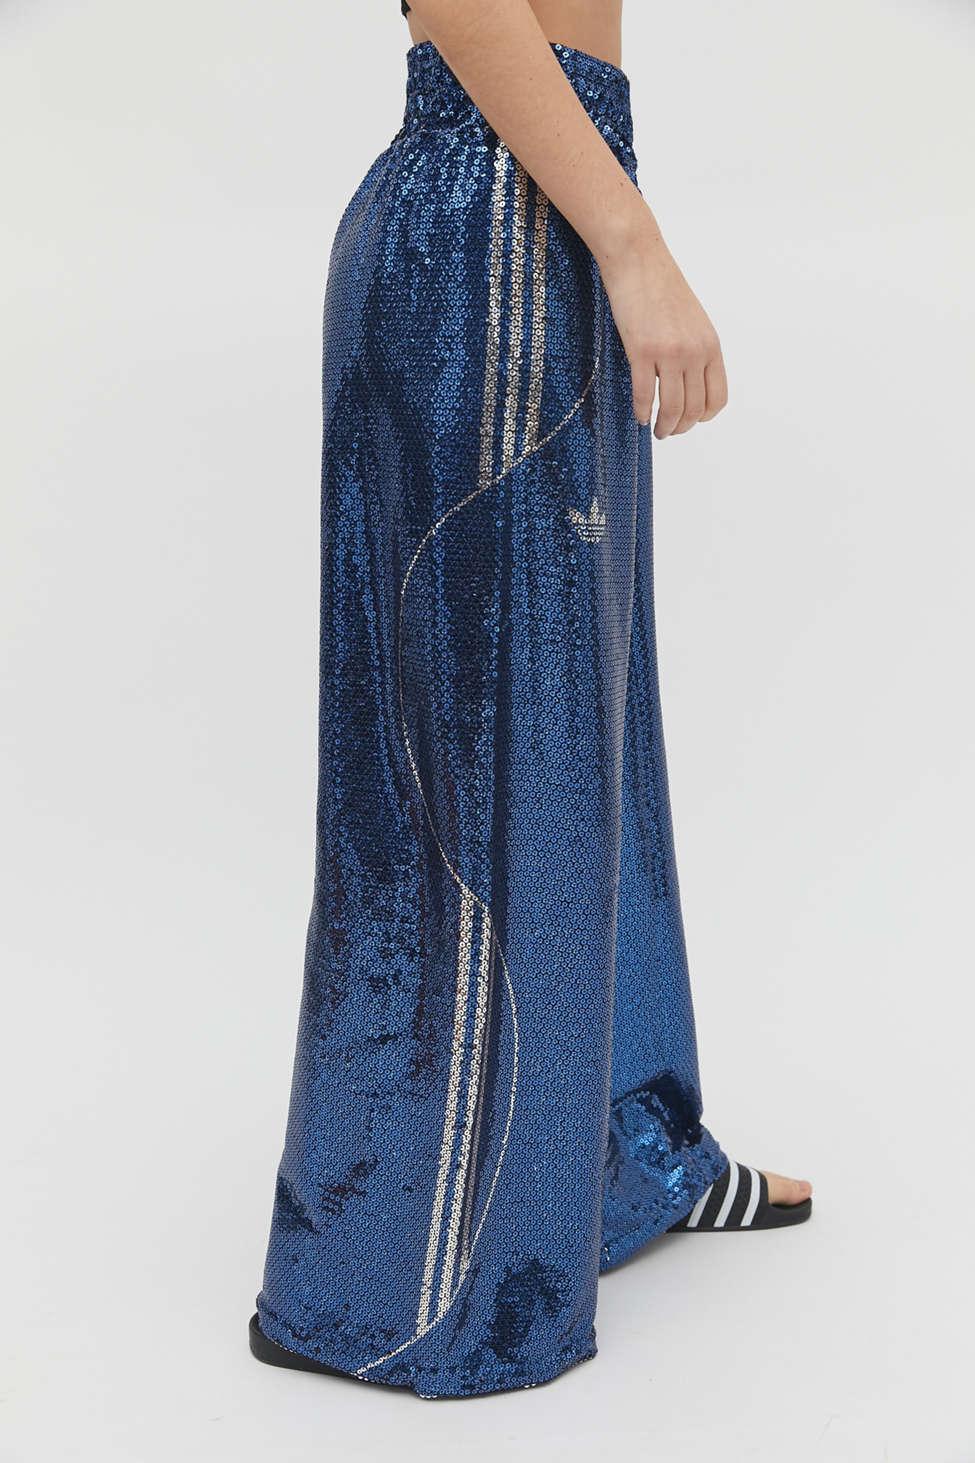 adidas Originals Anna Isoniemi Sequin Pant in Blue Lyst